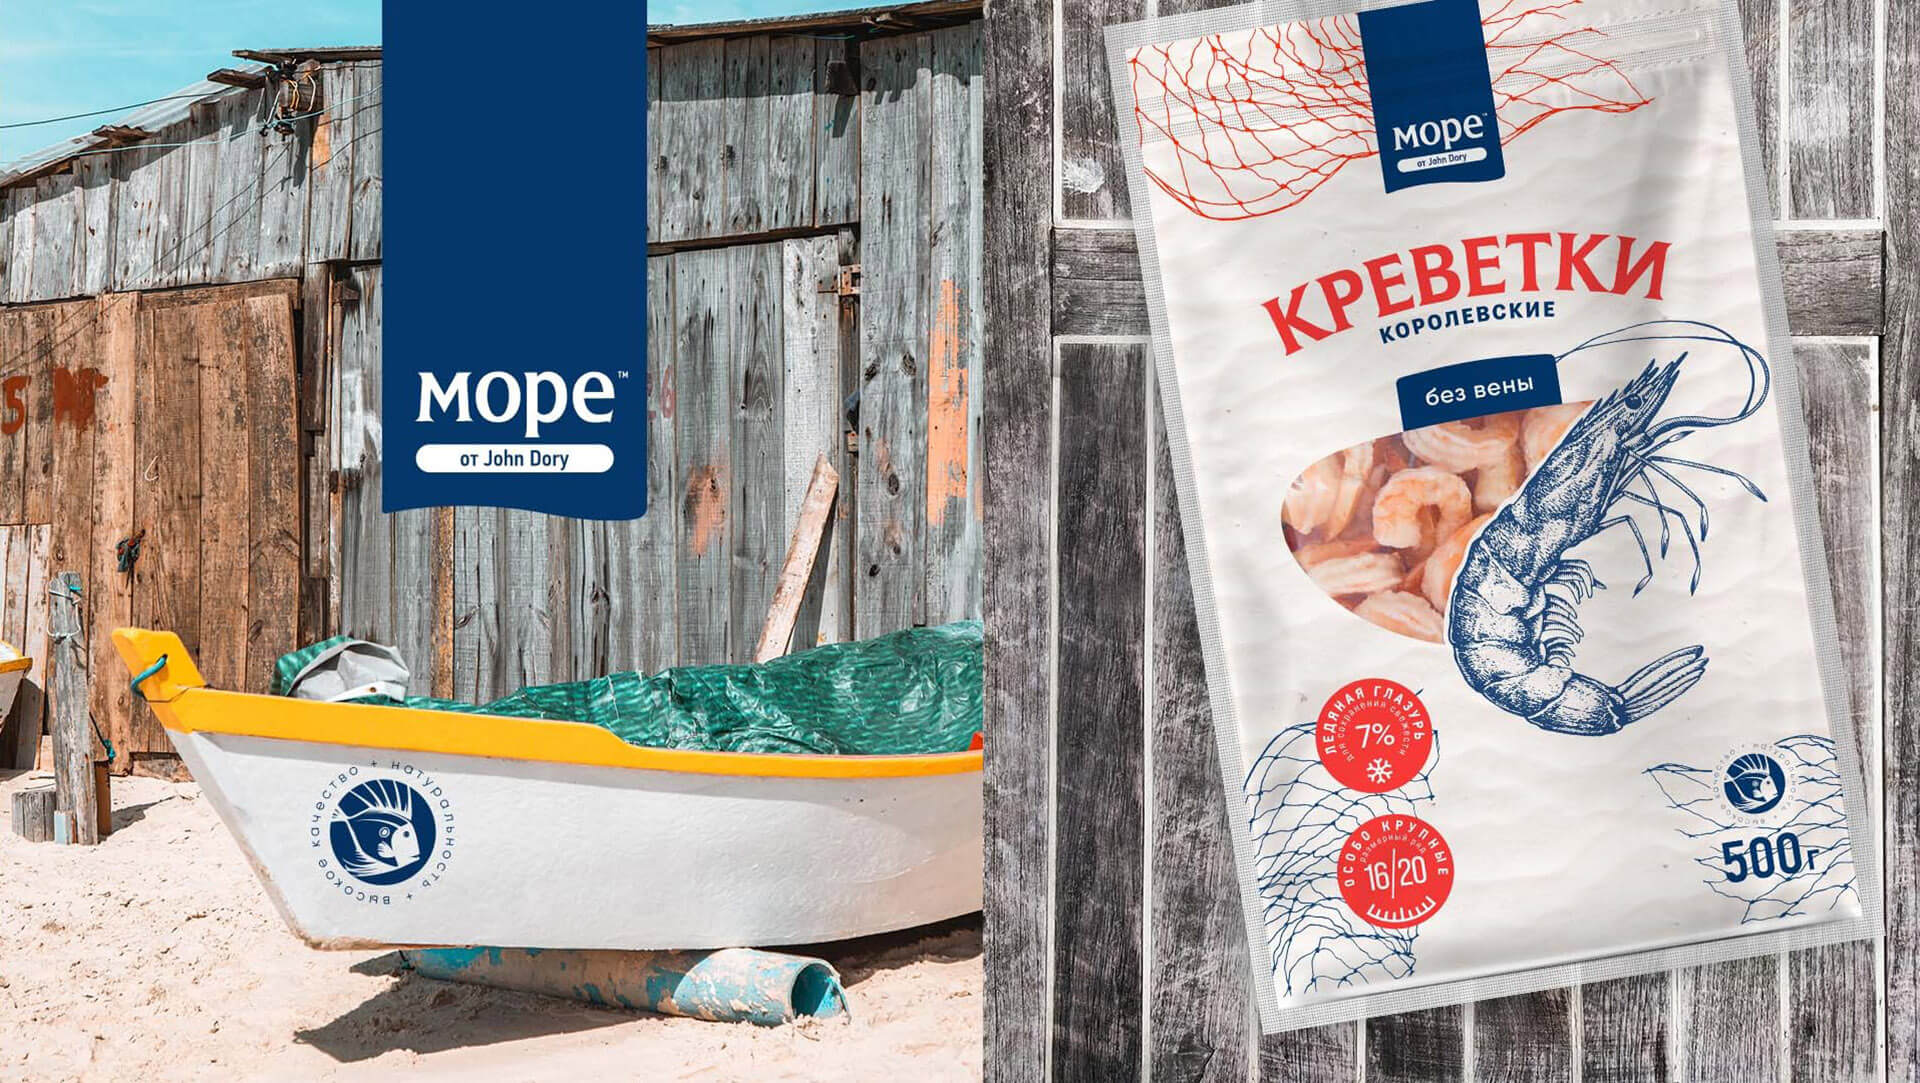 Mope冷冻海鲜产品包装设计